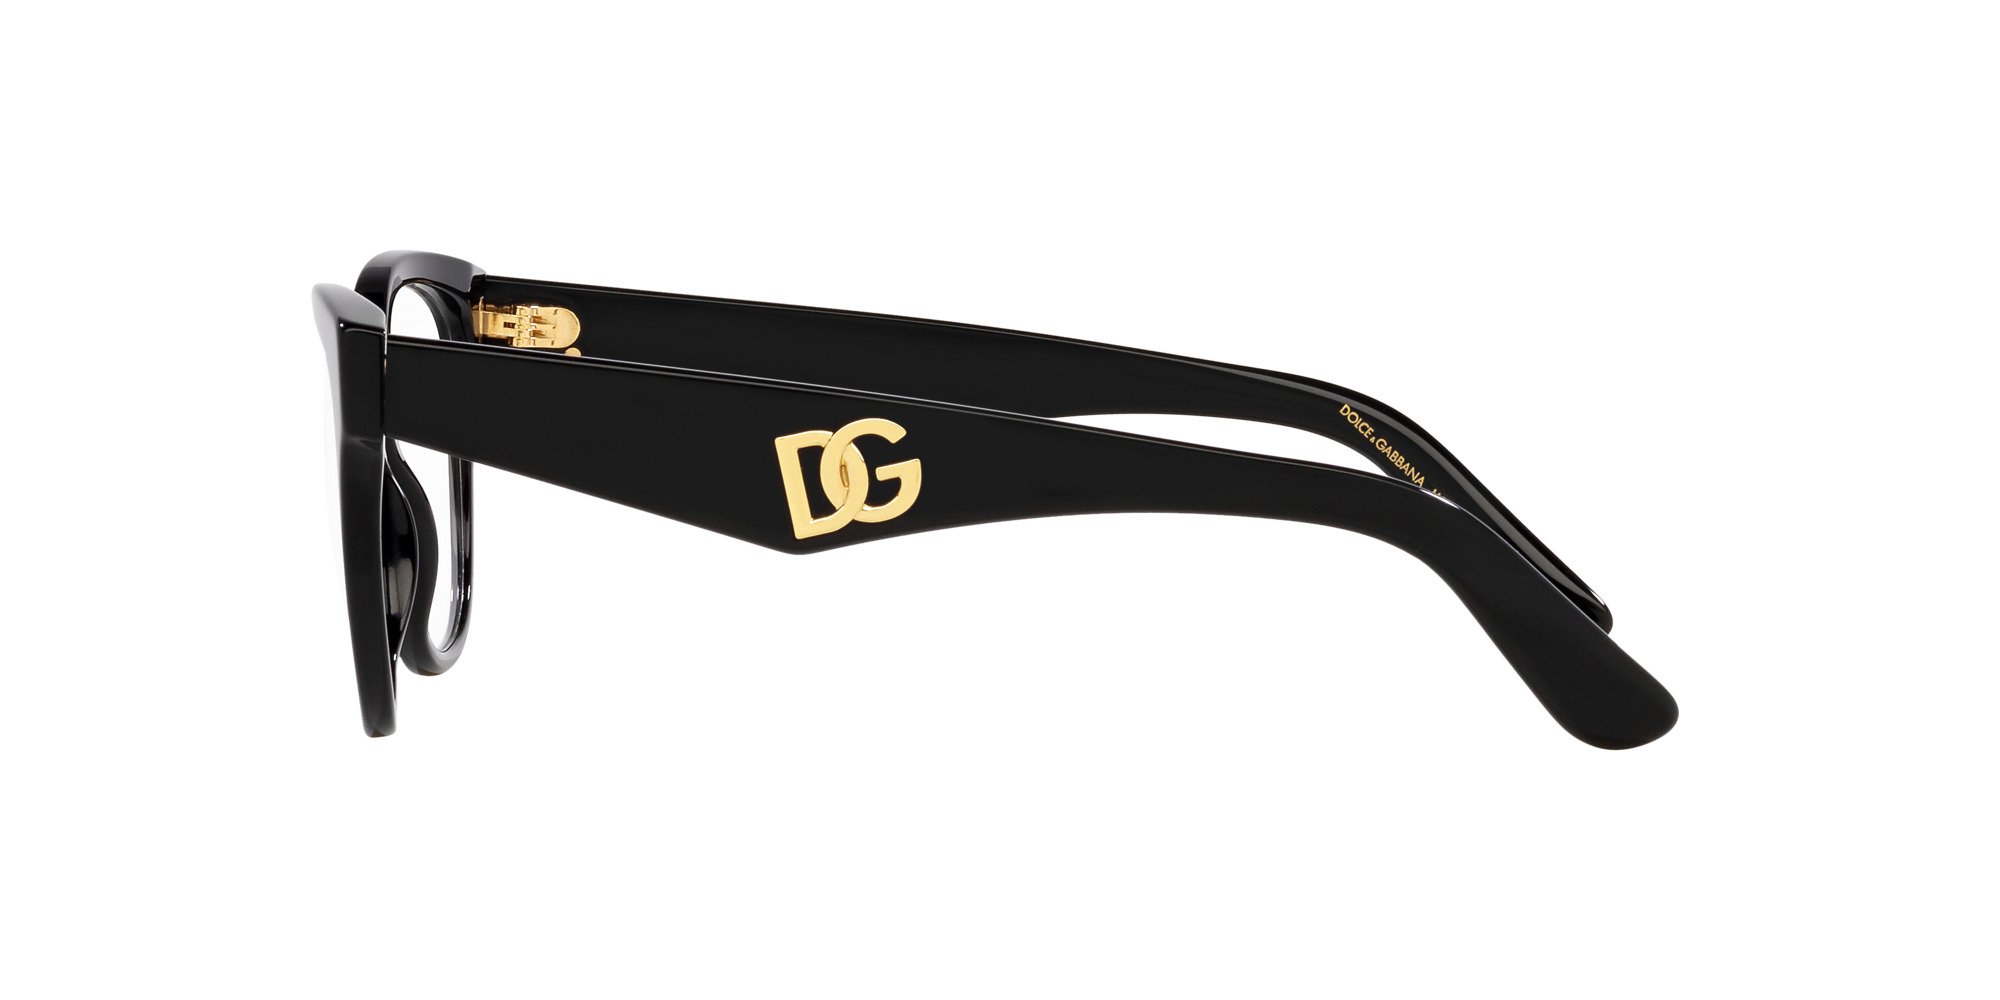 Das Bild zeigt die Korrektionsbrille DG3371 501 von der Marke D&G in schwarz.